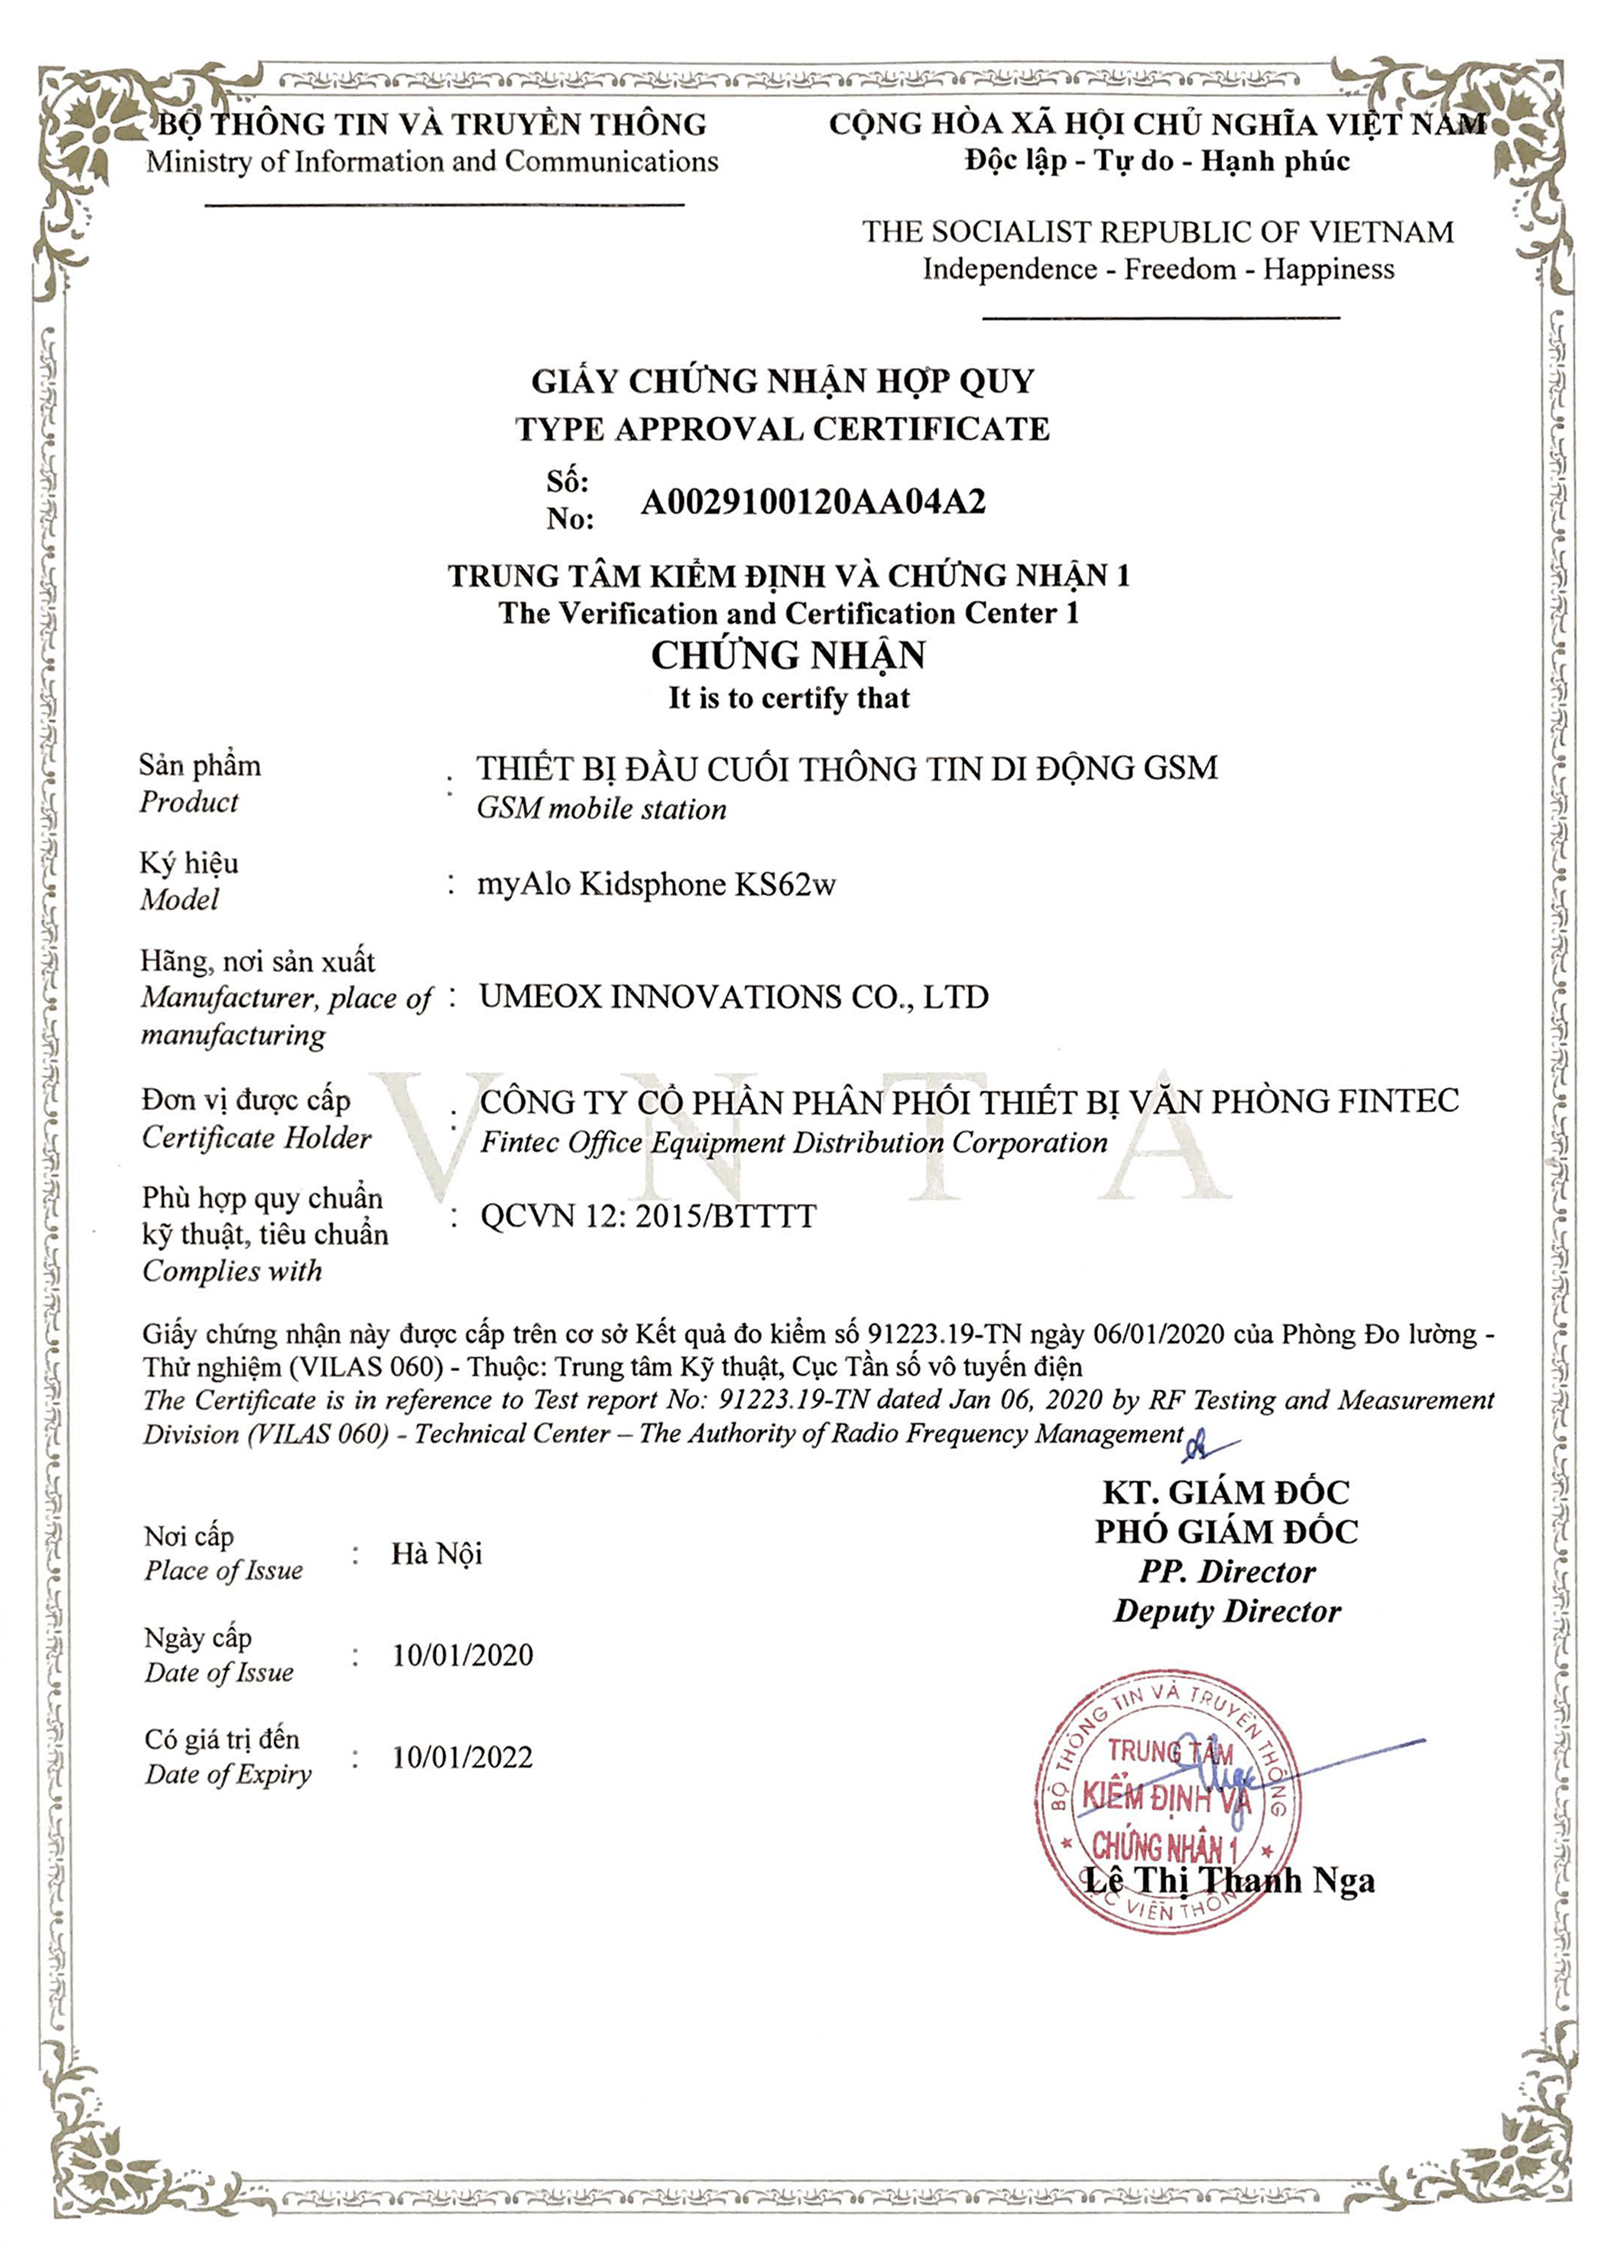 Đồng hồ định vị trẻ em myAlo KS62w - Chứng nhận hợp quy Quy chuẩn Việt Nam QCVN12:2015/BTTT